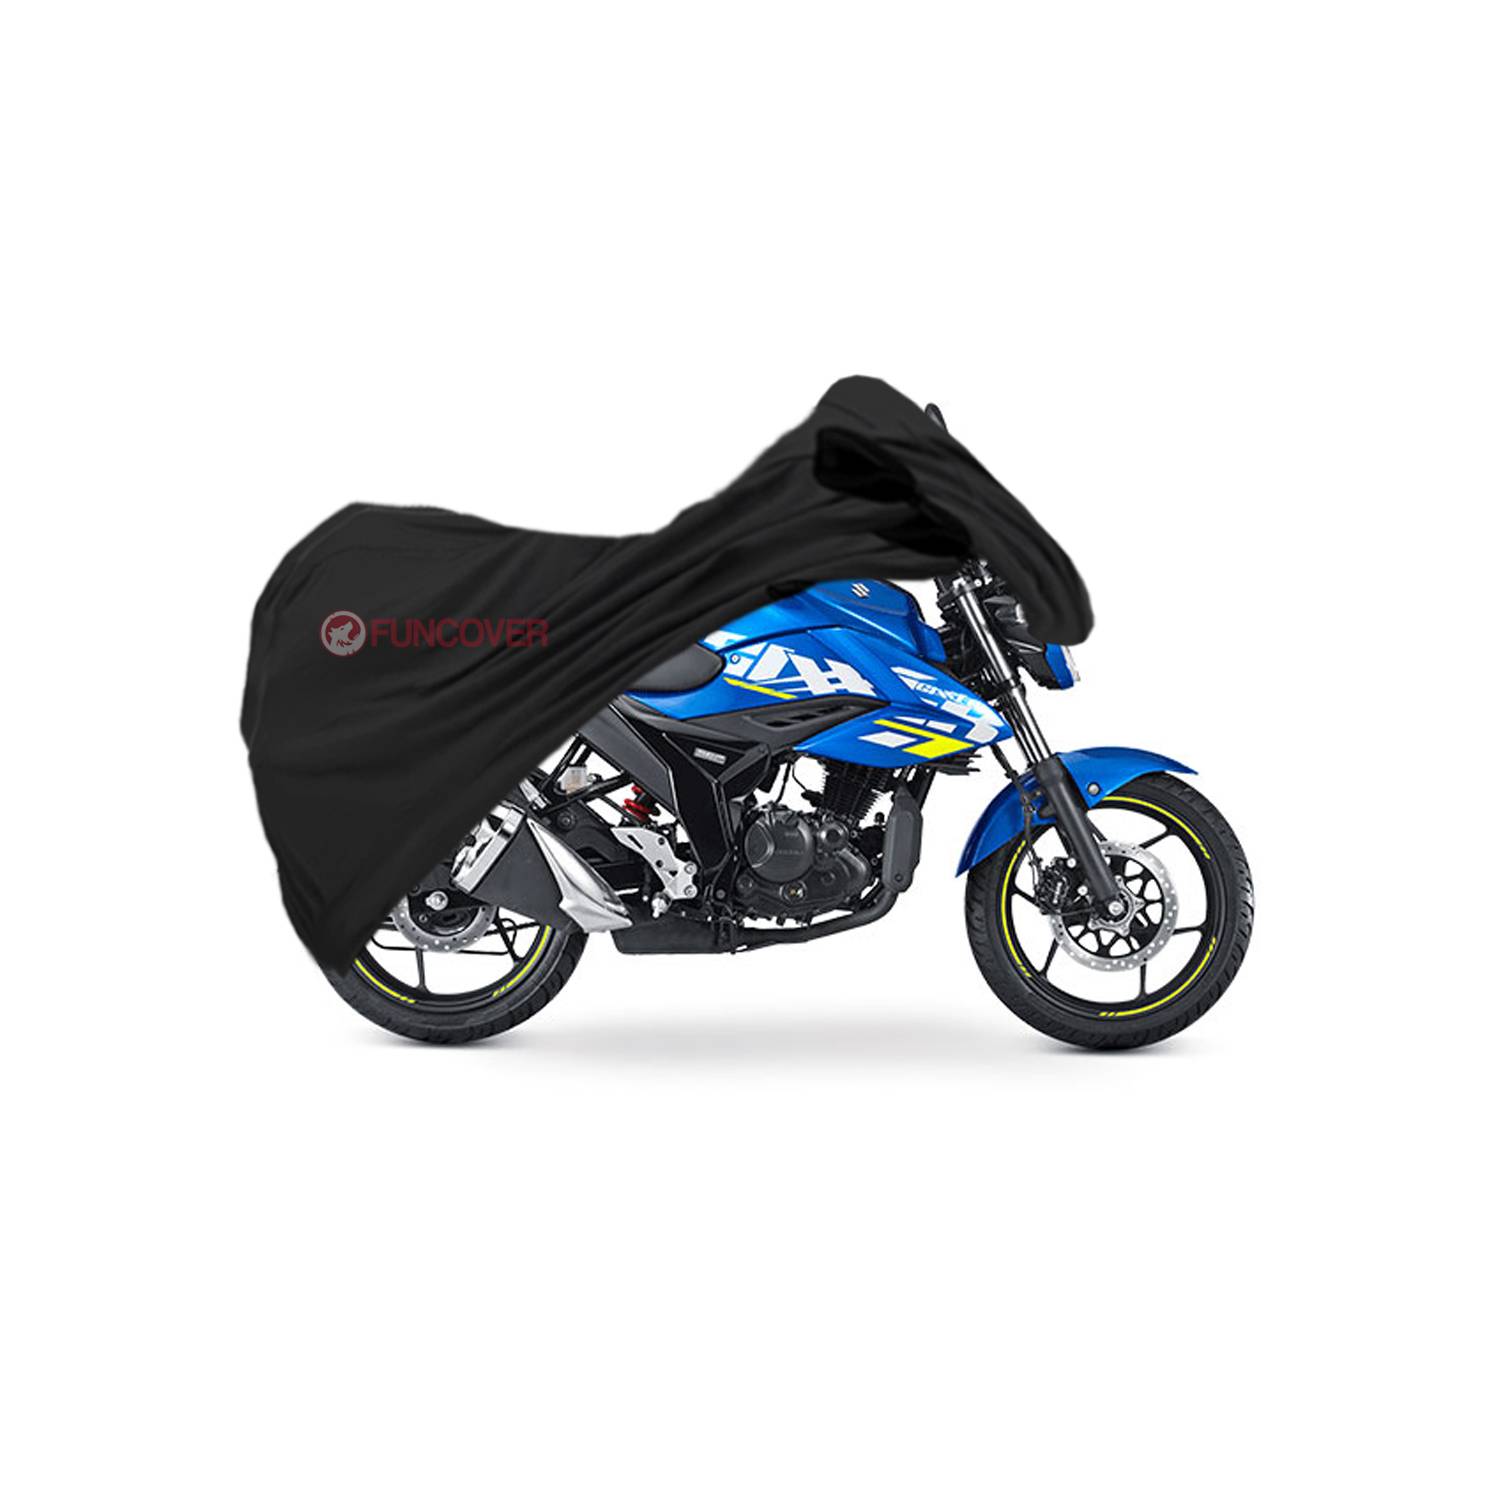 Schutzer - Funda para Motos tipo BIKINI cubre de forma sencilla y ligera el  asiento, tablero y puños de Tu moto Moto Chica $ 290.00 Moto Mediana $  320.00 Moto Grande $